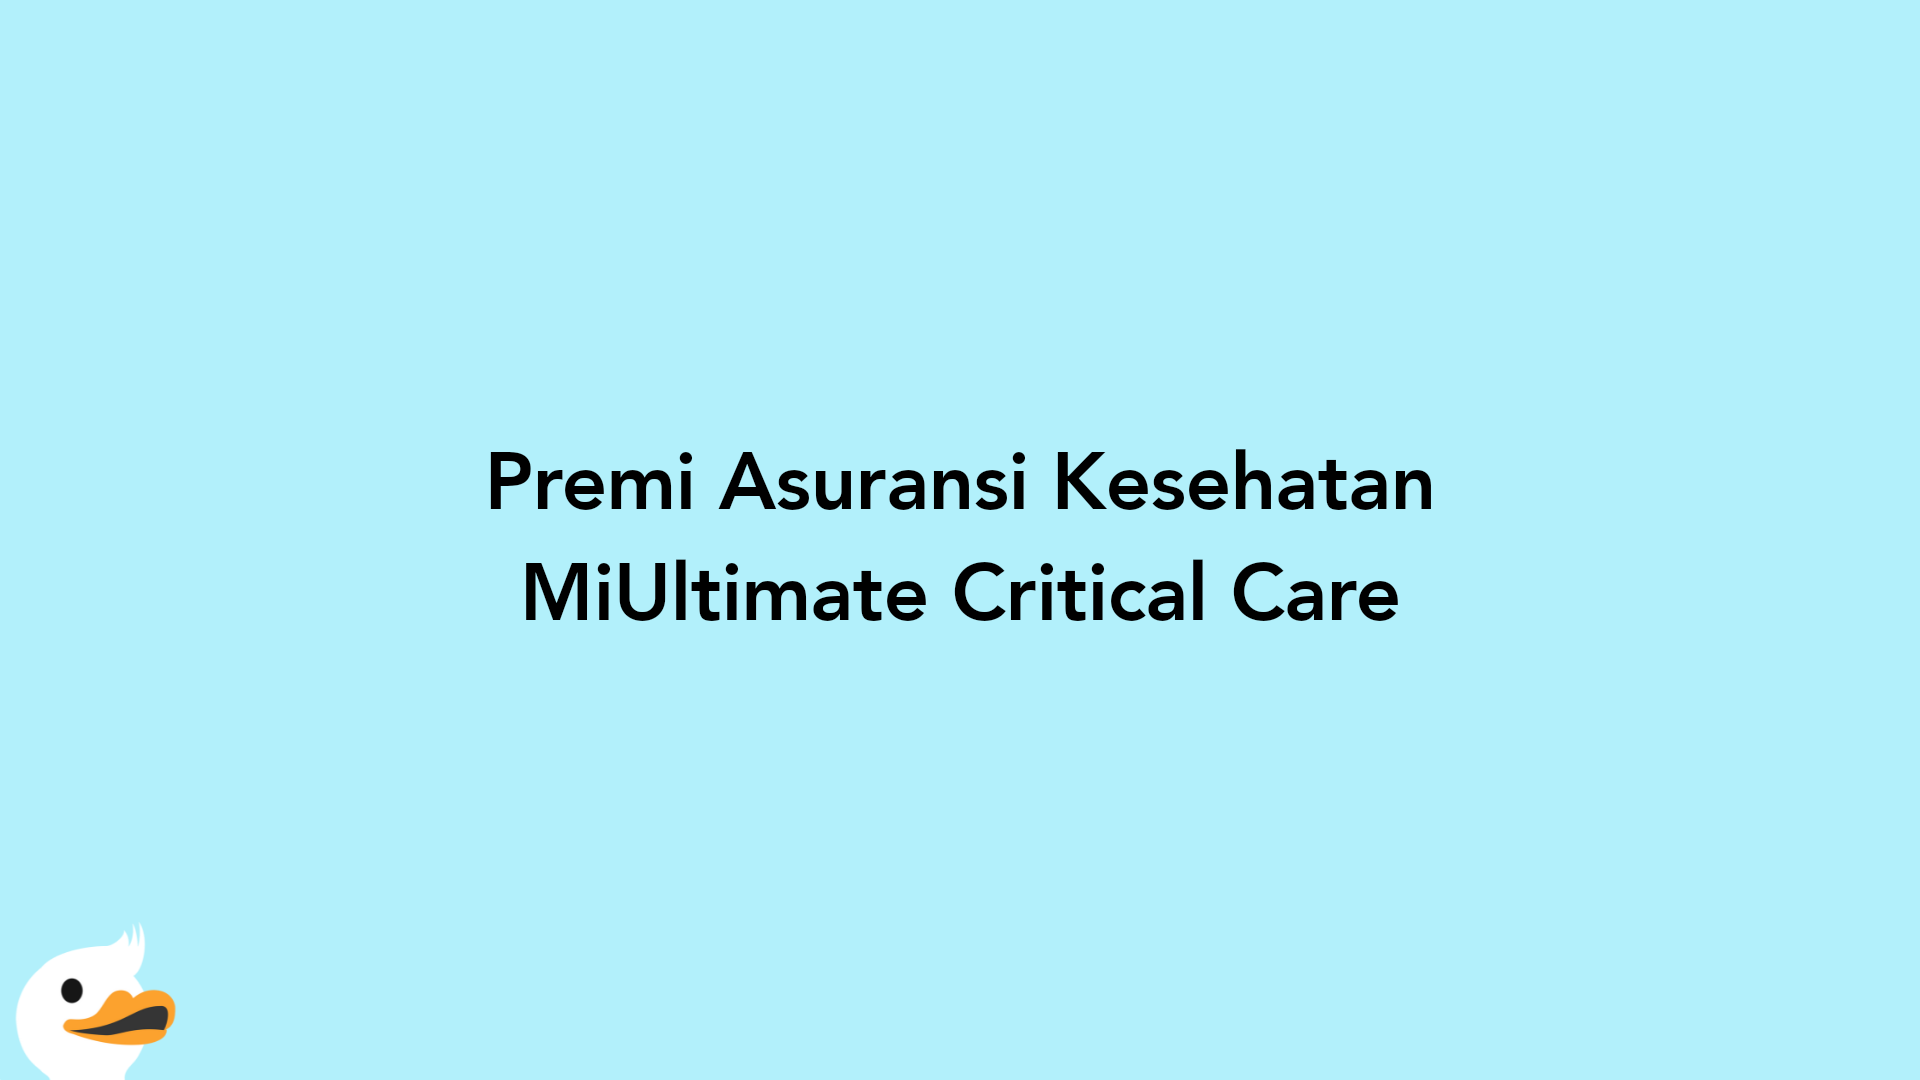 Premi Asuransi Kesehatan MiUltimate Critical Care